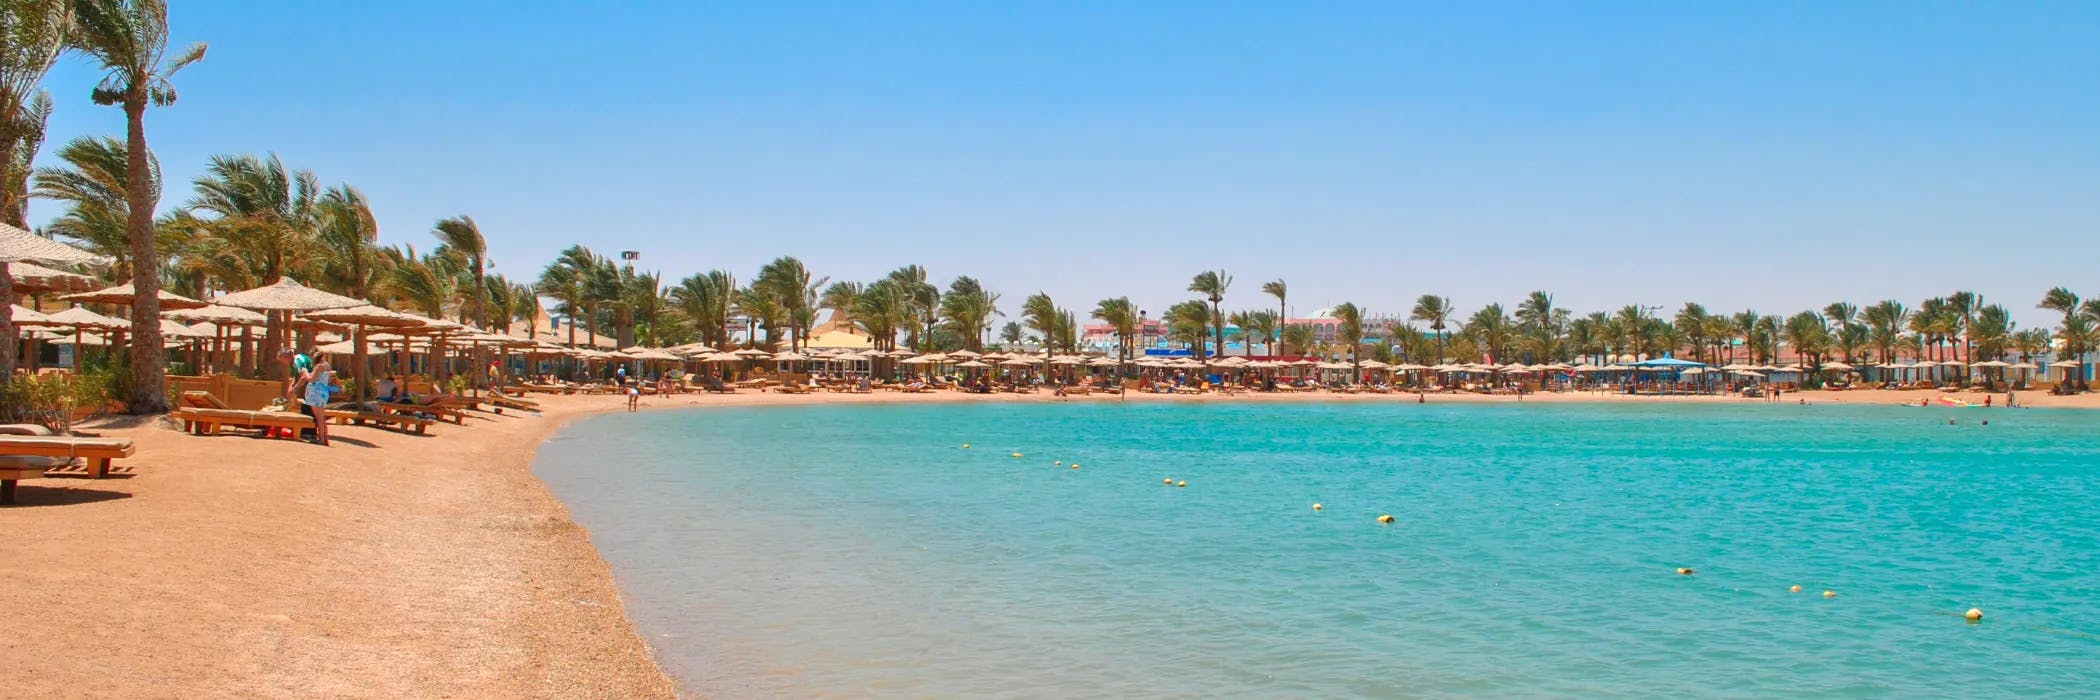 Hotels In Egypt - Hurghada Beach, Egypt